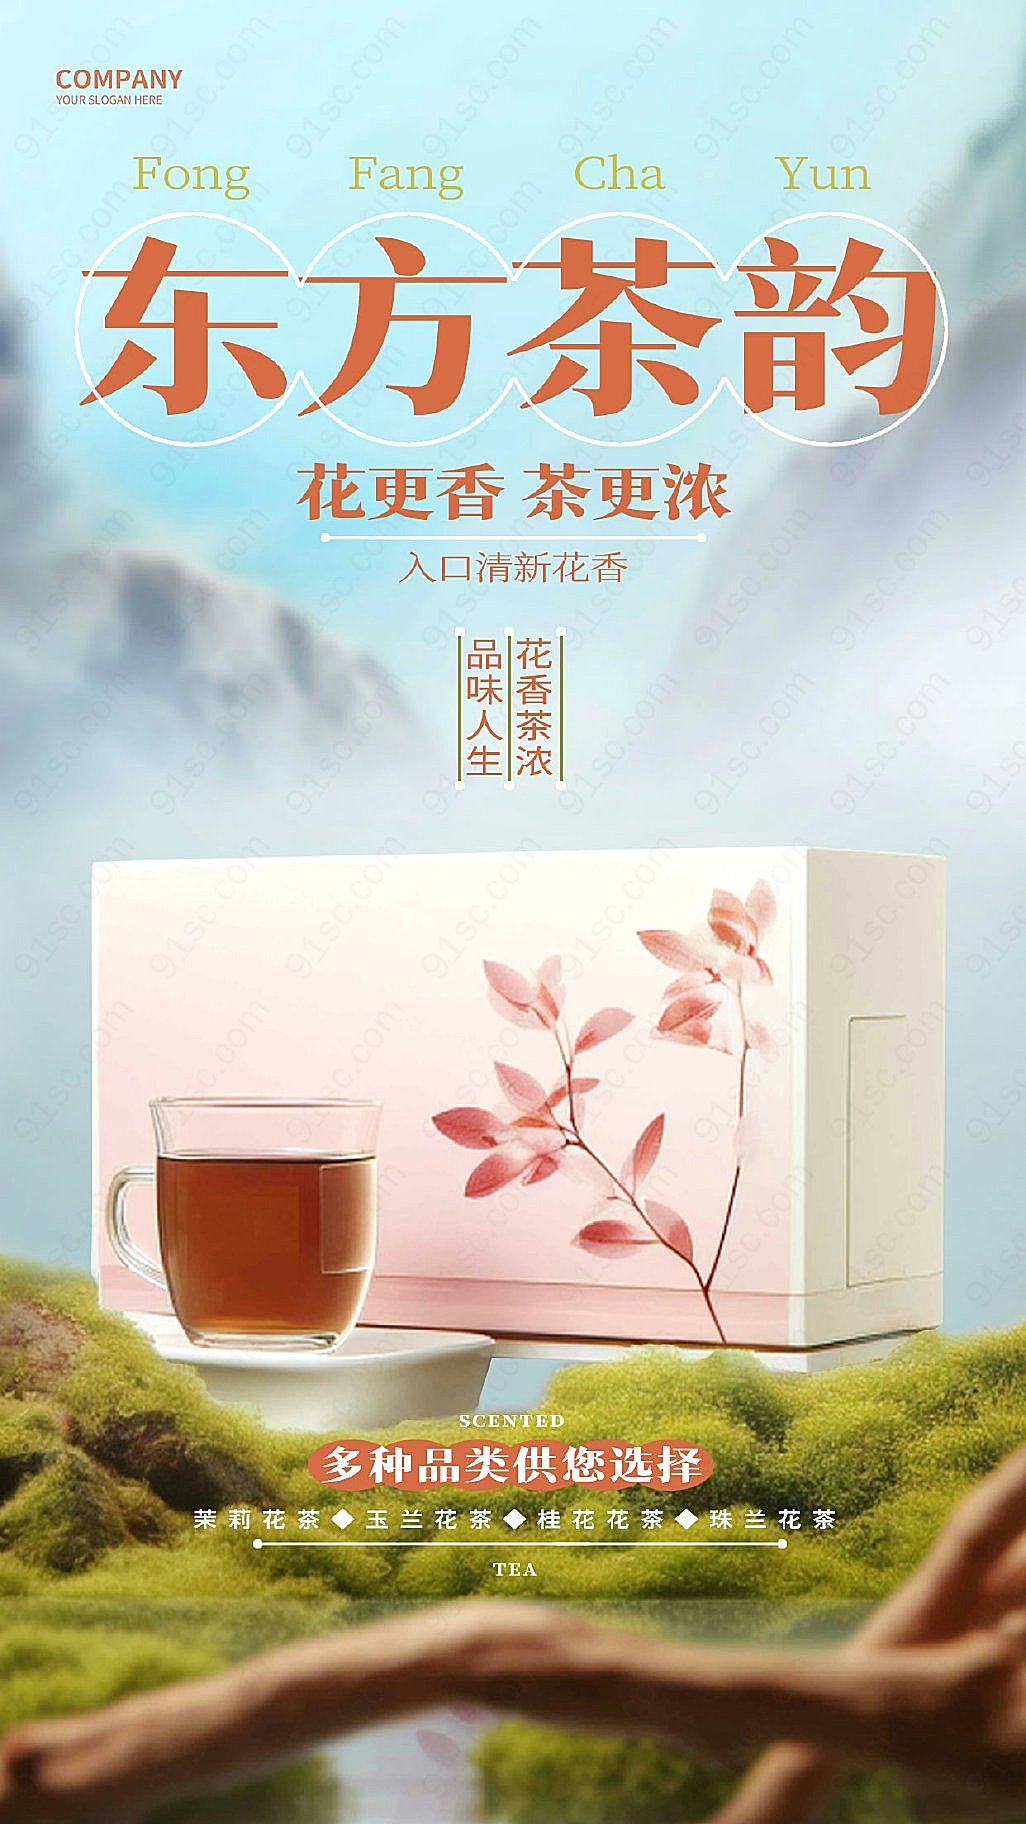 创新中国风尚花茶手机海报设计新媒体用图下载